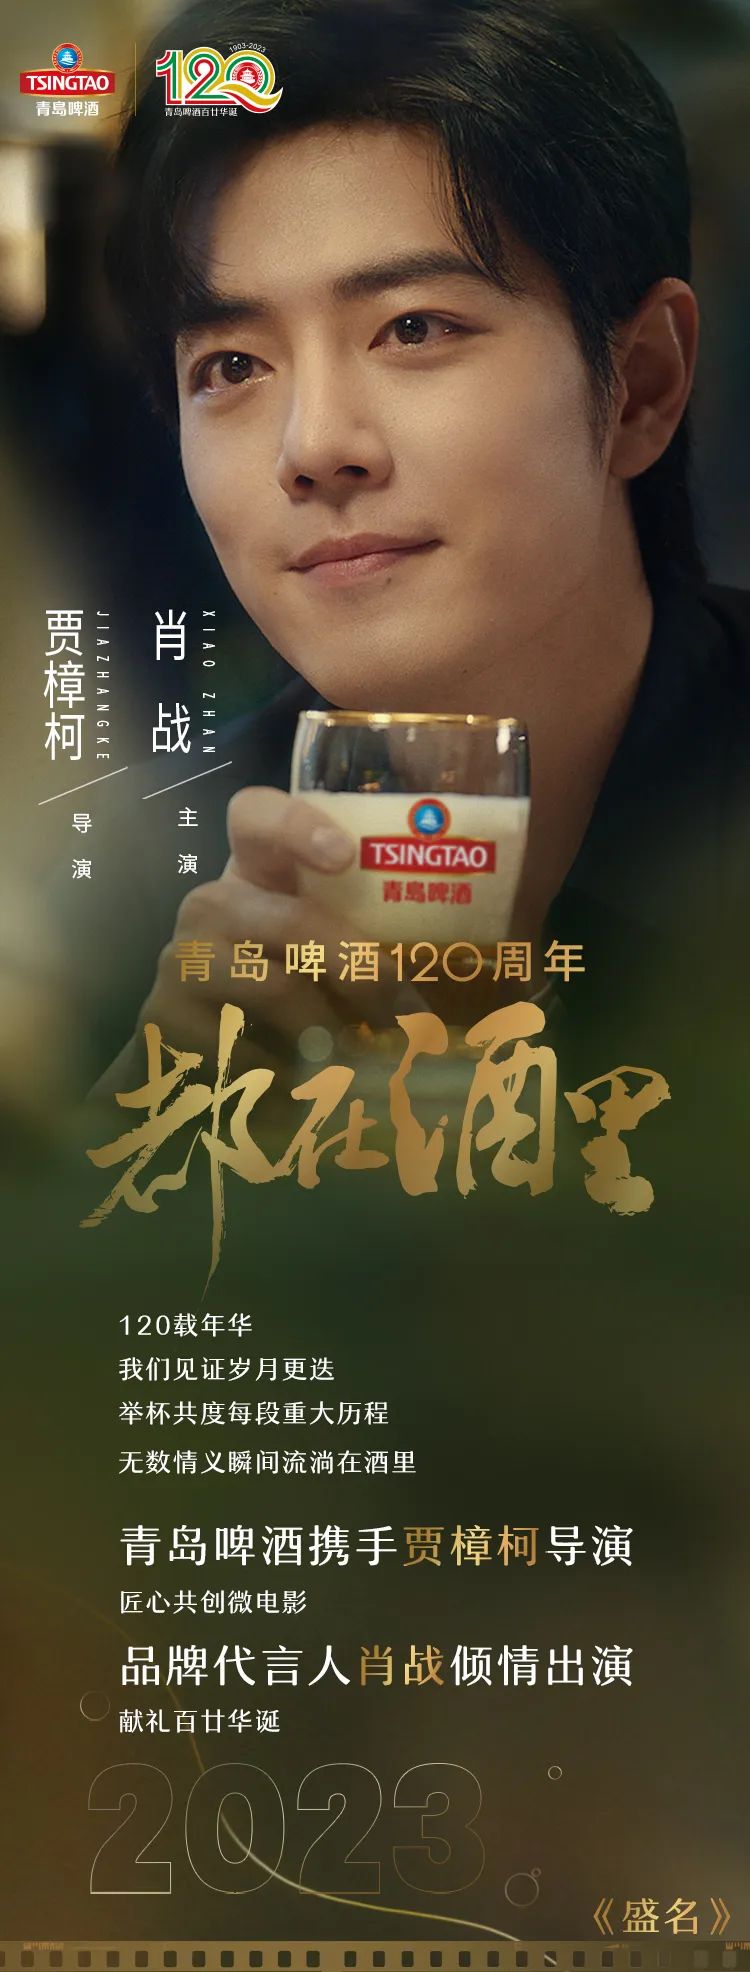 青岛啤酒120周年微电影《都在酒里》正式发布